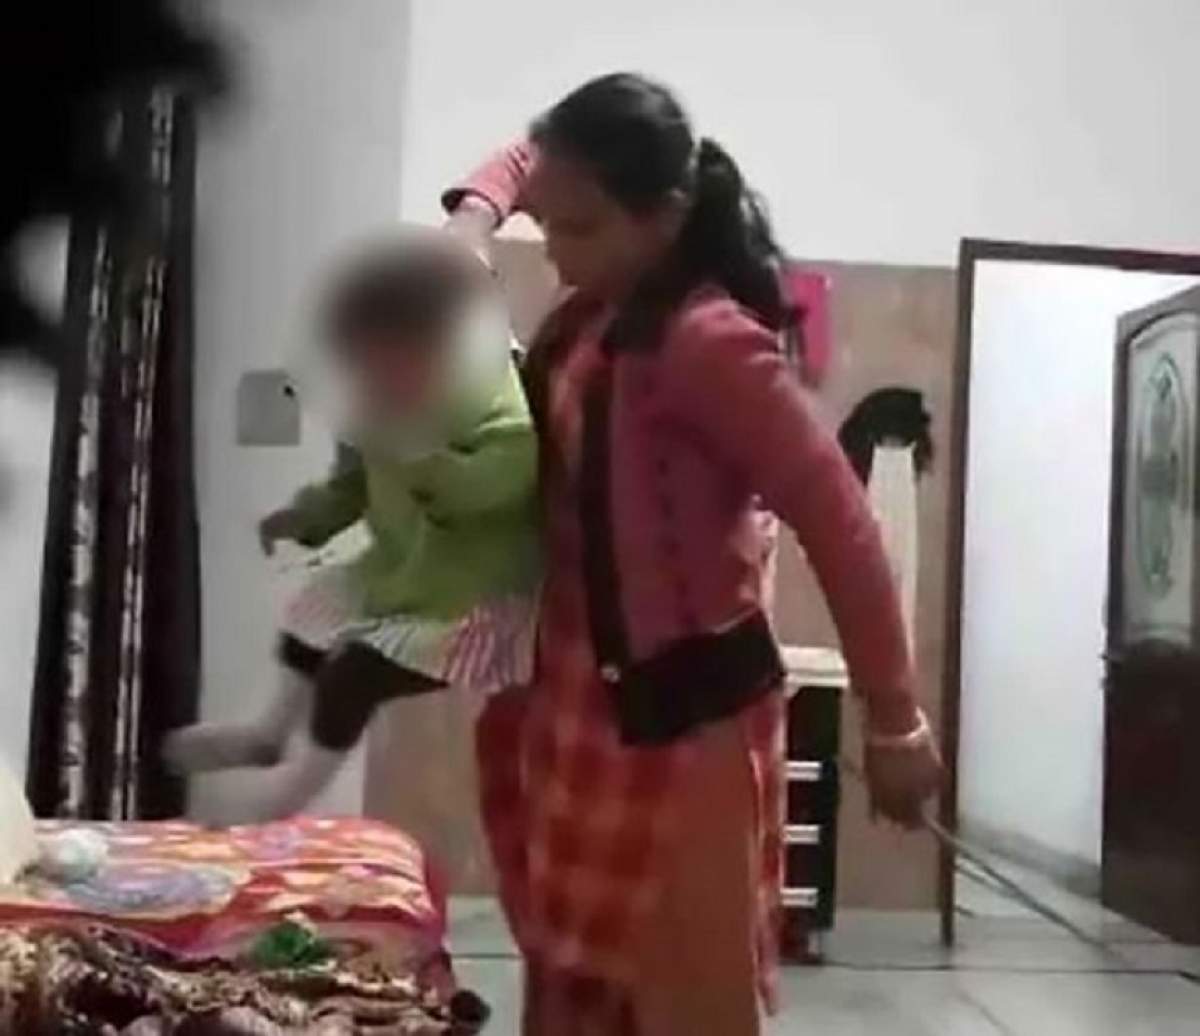 VIDEO / Au instalat o camera video şi au rămas şocaţi când au văzut cum era tratat copilul lor! Mama a început să plângă